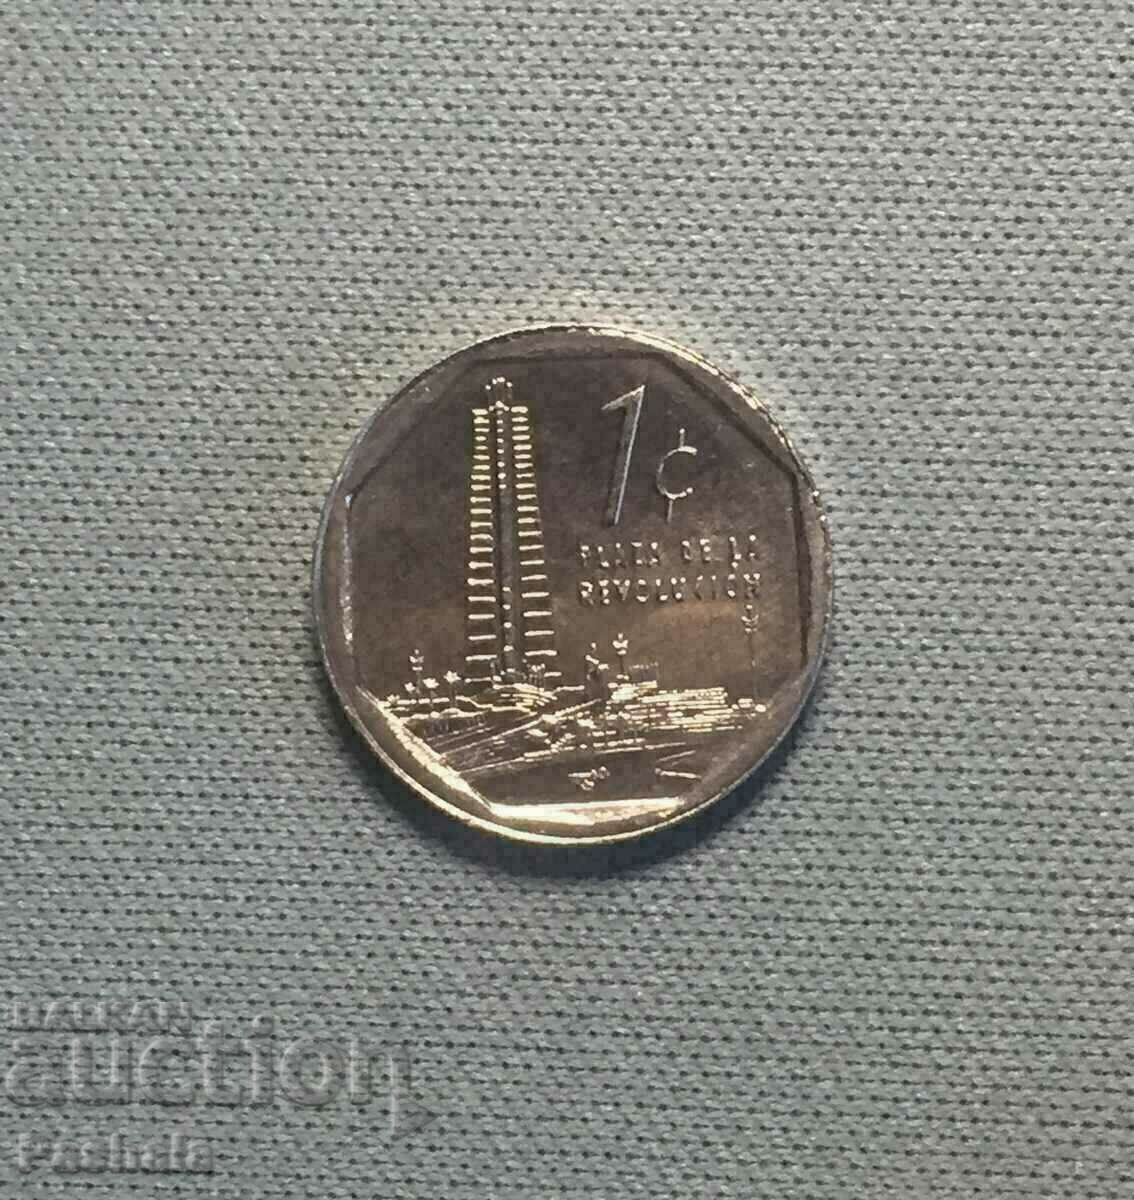 Cuba 1 centavo 2019